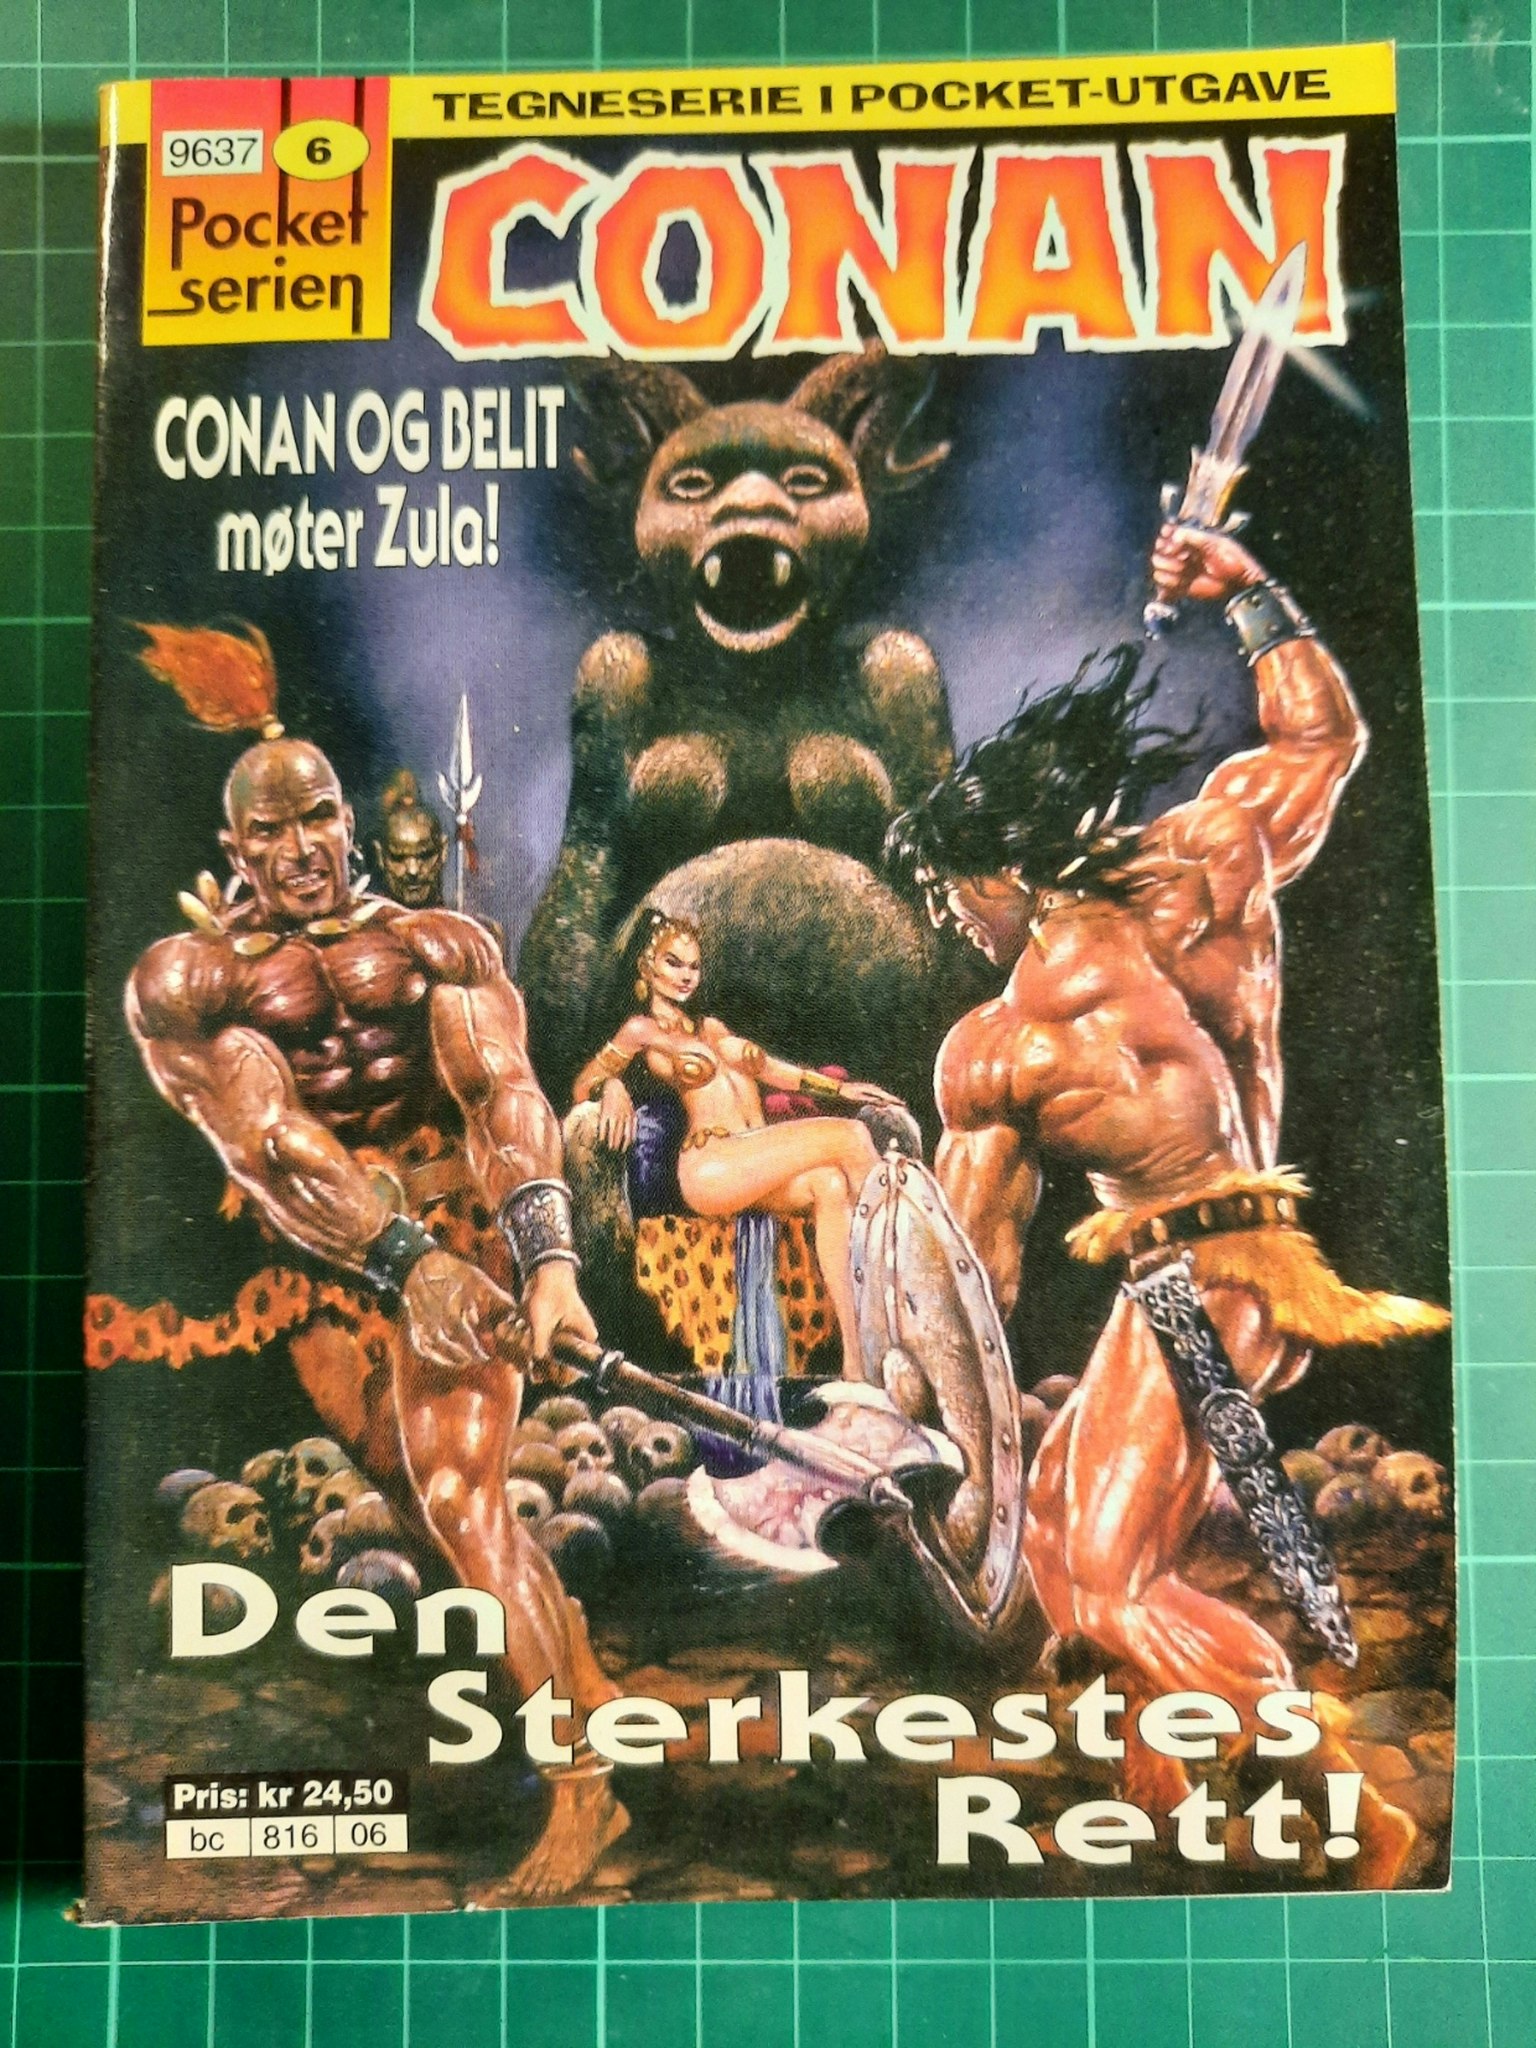 Pocket serien 06 : Conan